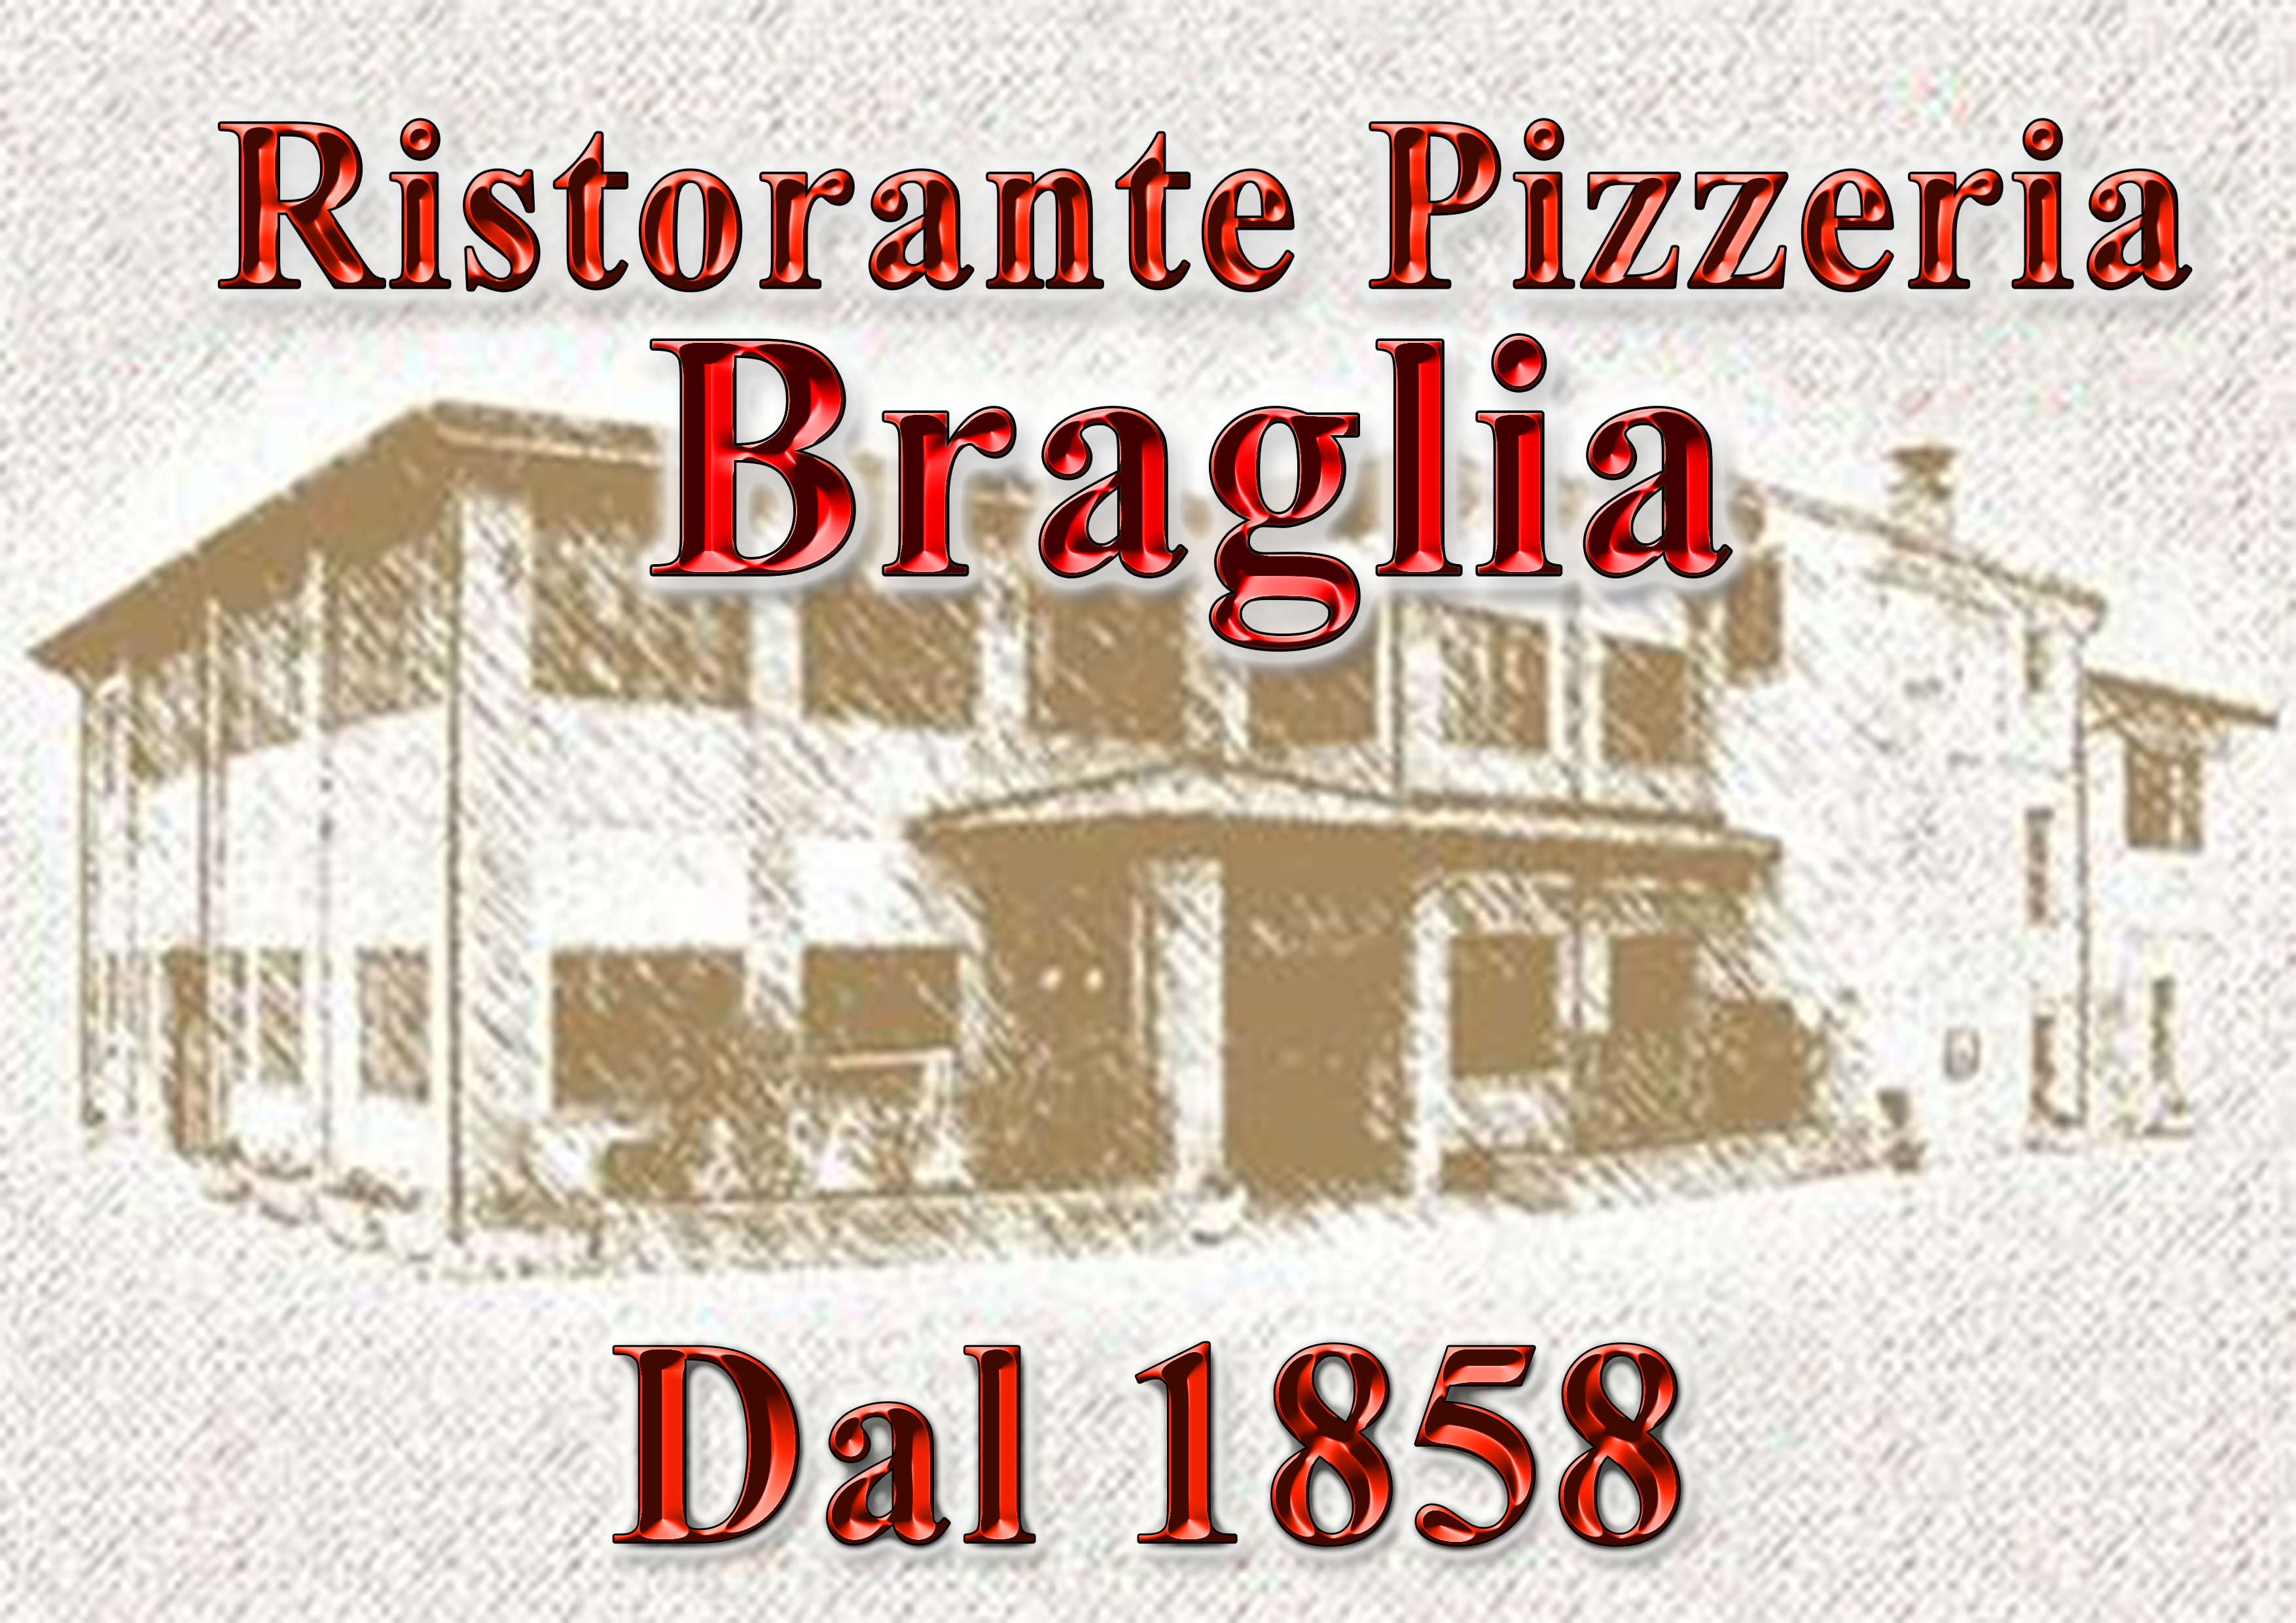 Immagini Ristorante Ristorante Pizzeria Braglia